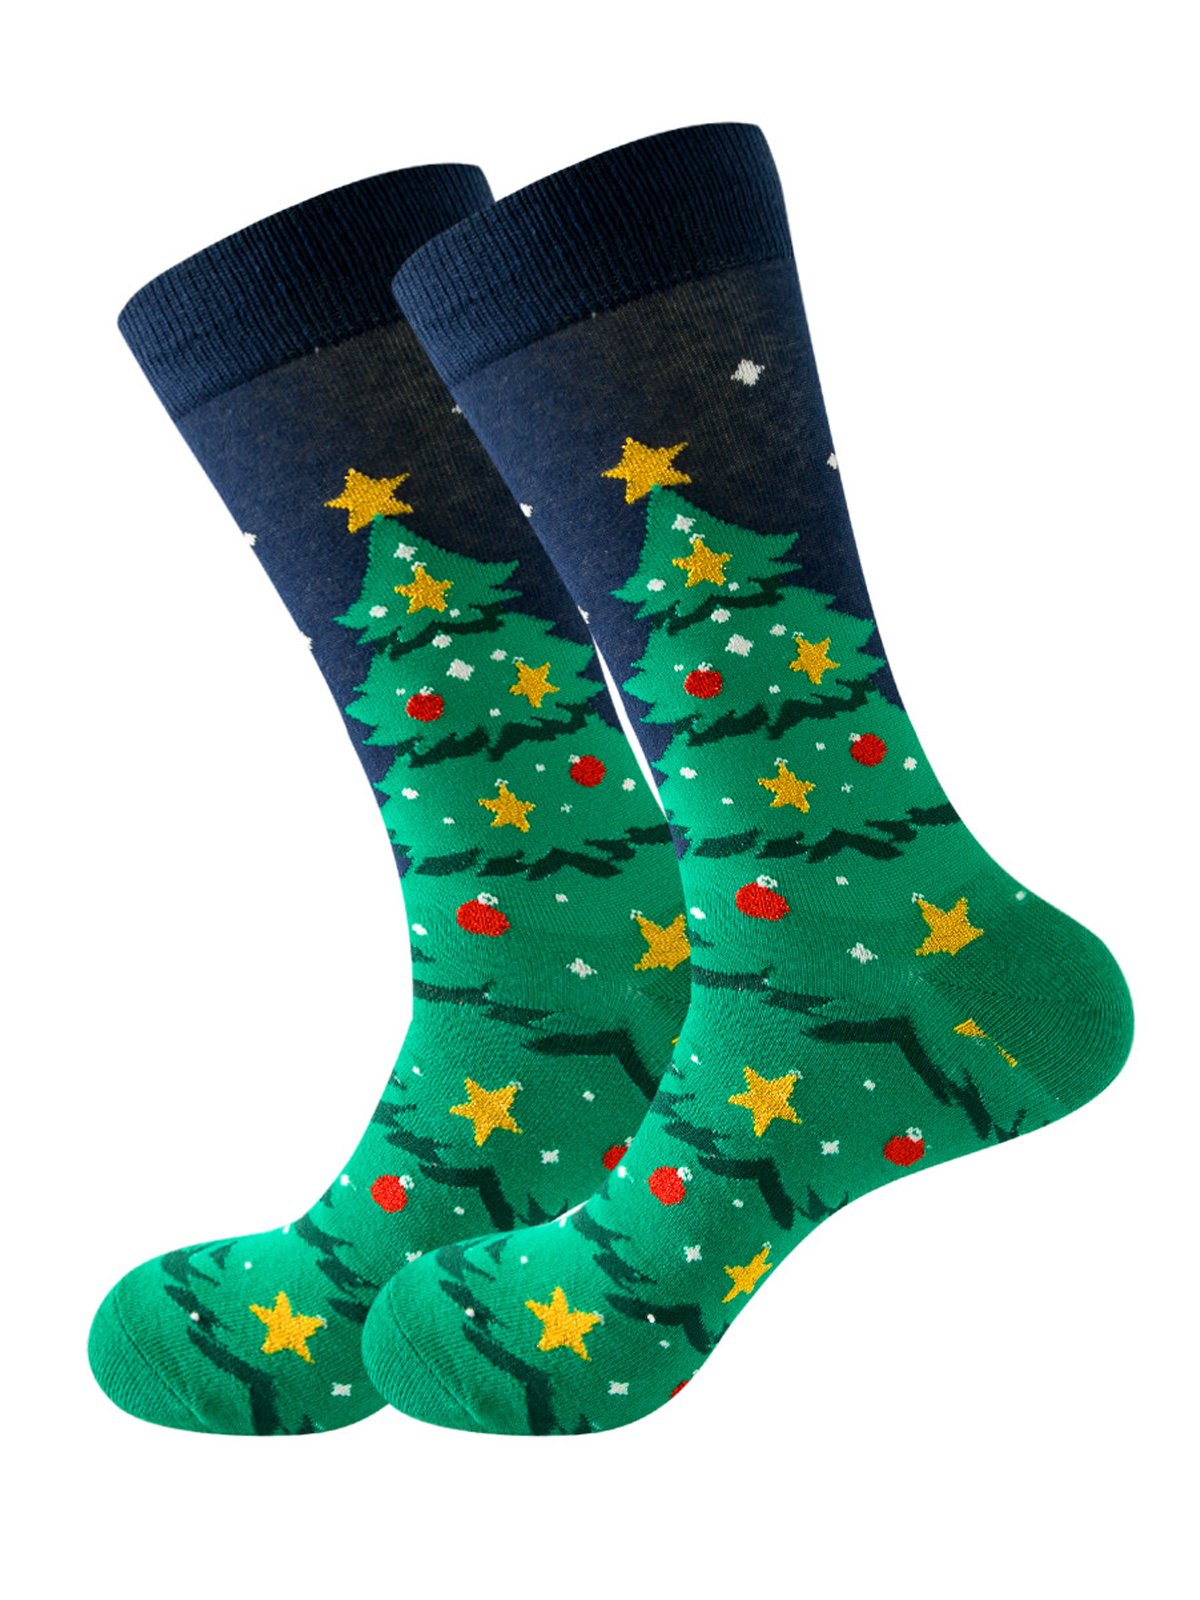 Royaura Men's Christmas Jacquard Stockings